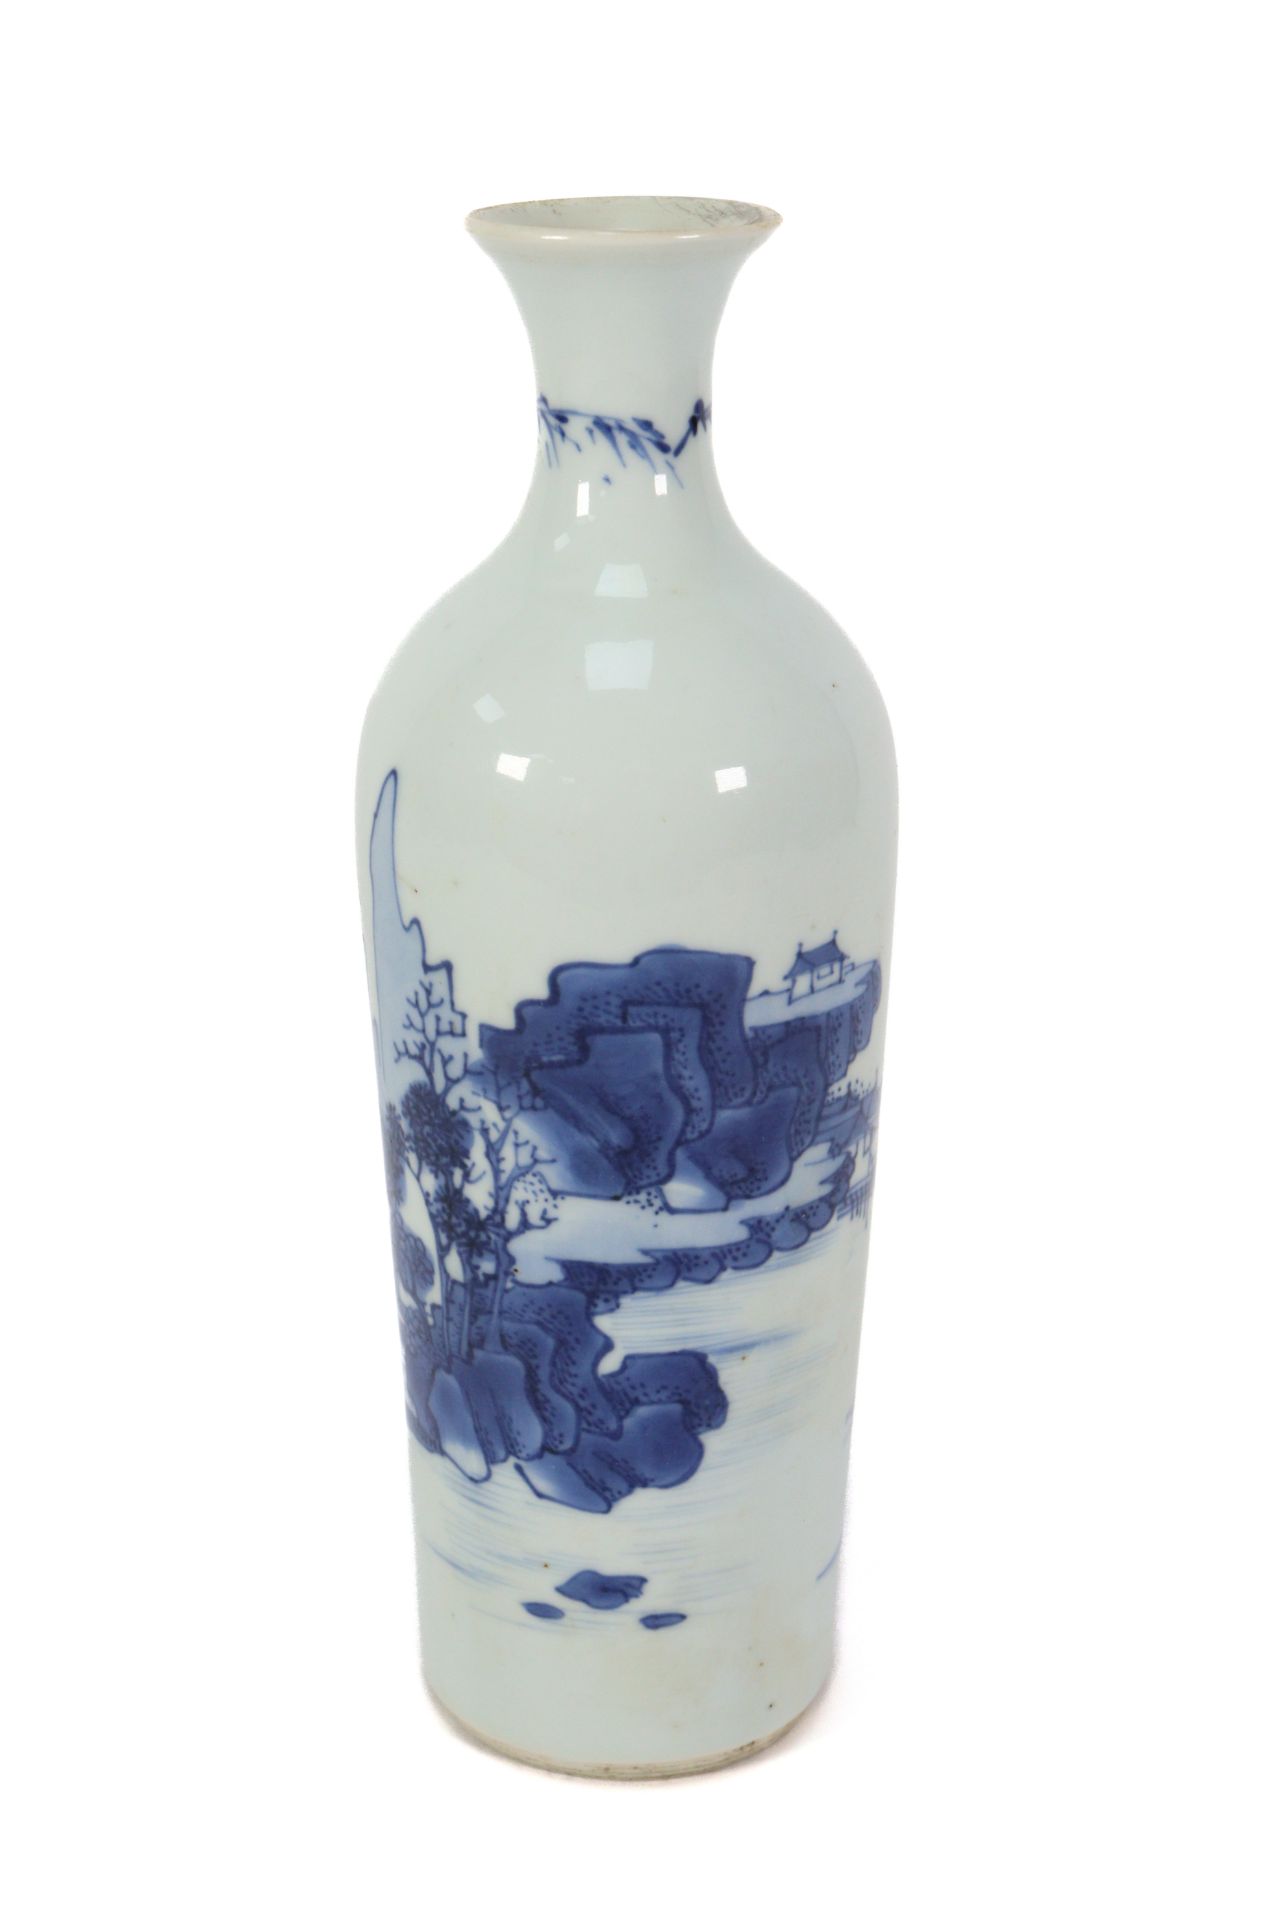 Chinese Blue and White Bottle Vase - Image 7 of 7